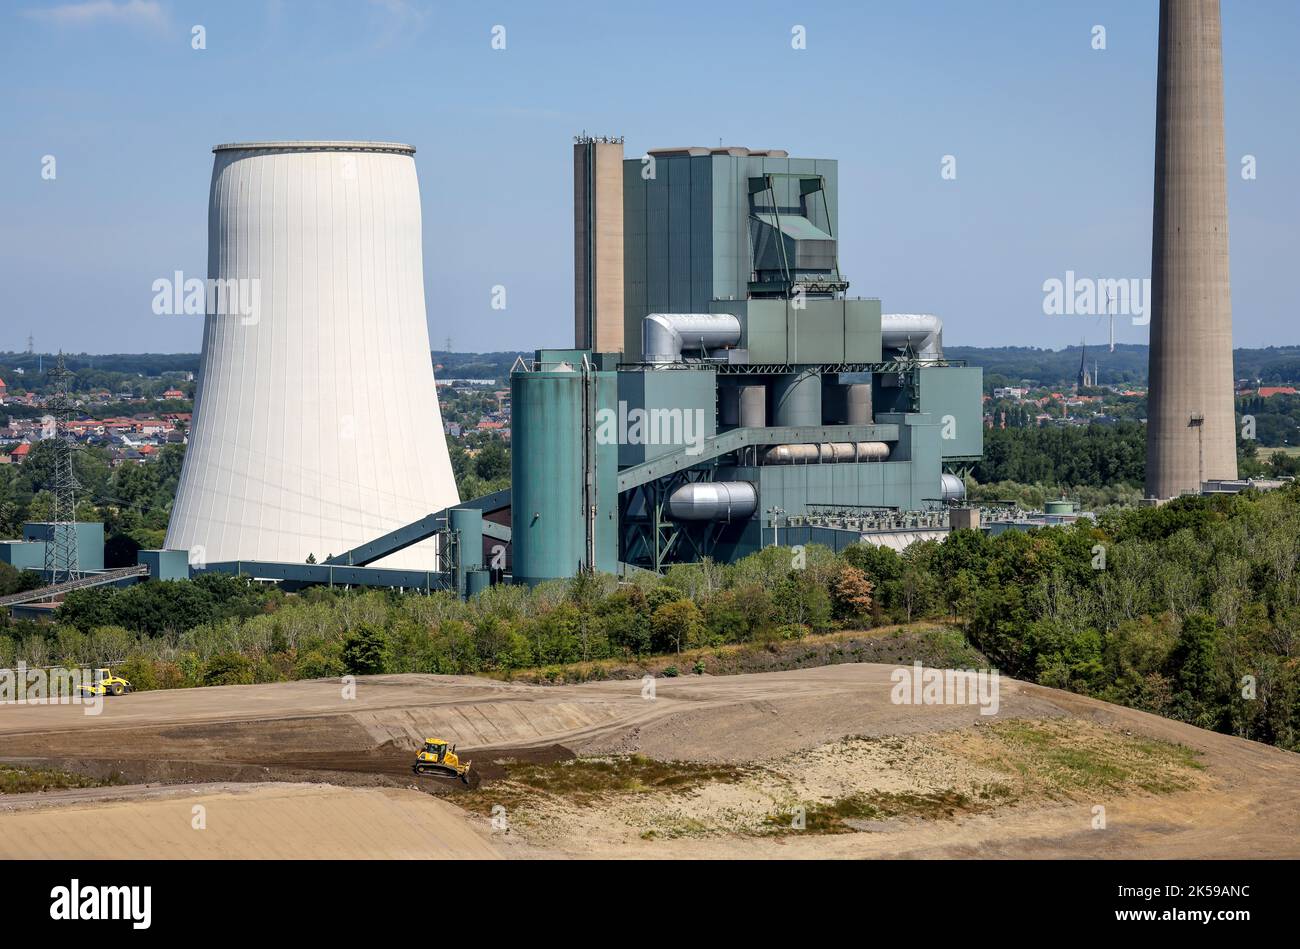 03.08.2022, Deutschland, Nordrhein-Westfalen, Bergkamen - Steag Kraftwerk Bergkamen, Kohlekraftwerk. Im Jahr 1981 wurde das Kraftwerk auf der Datteln- Stockfoto